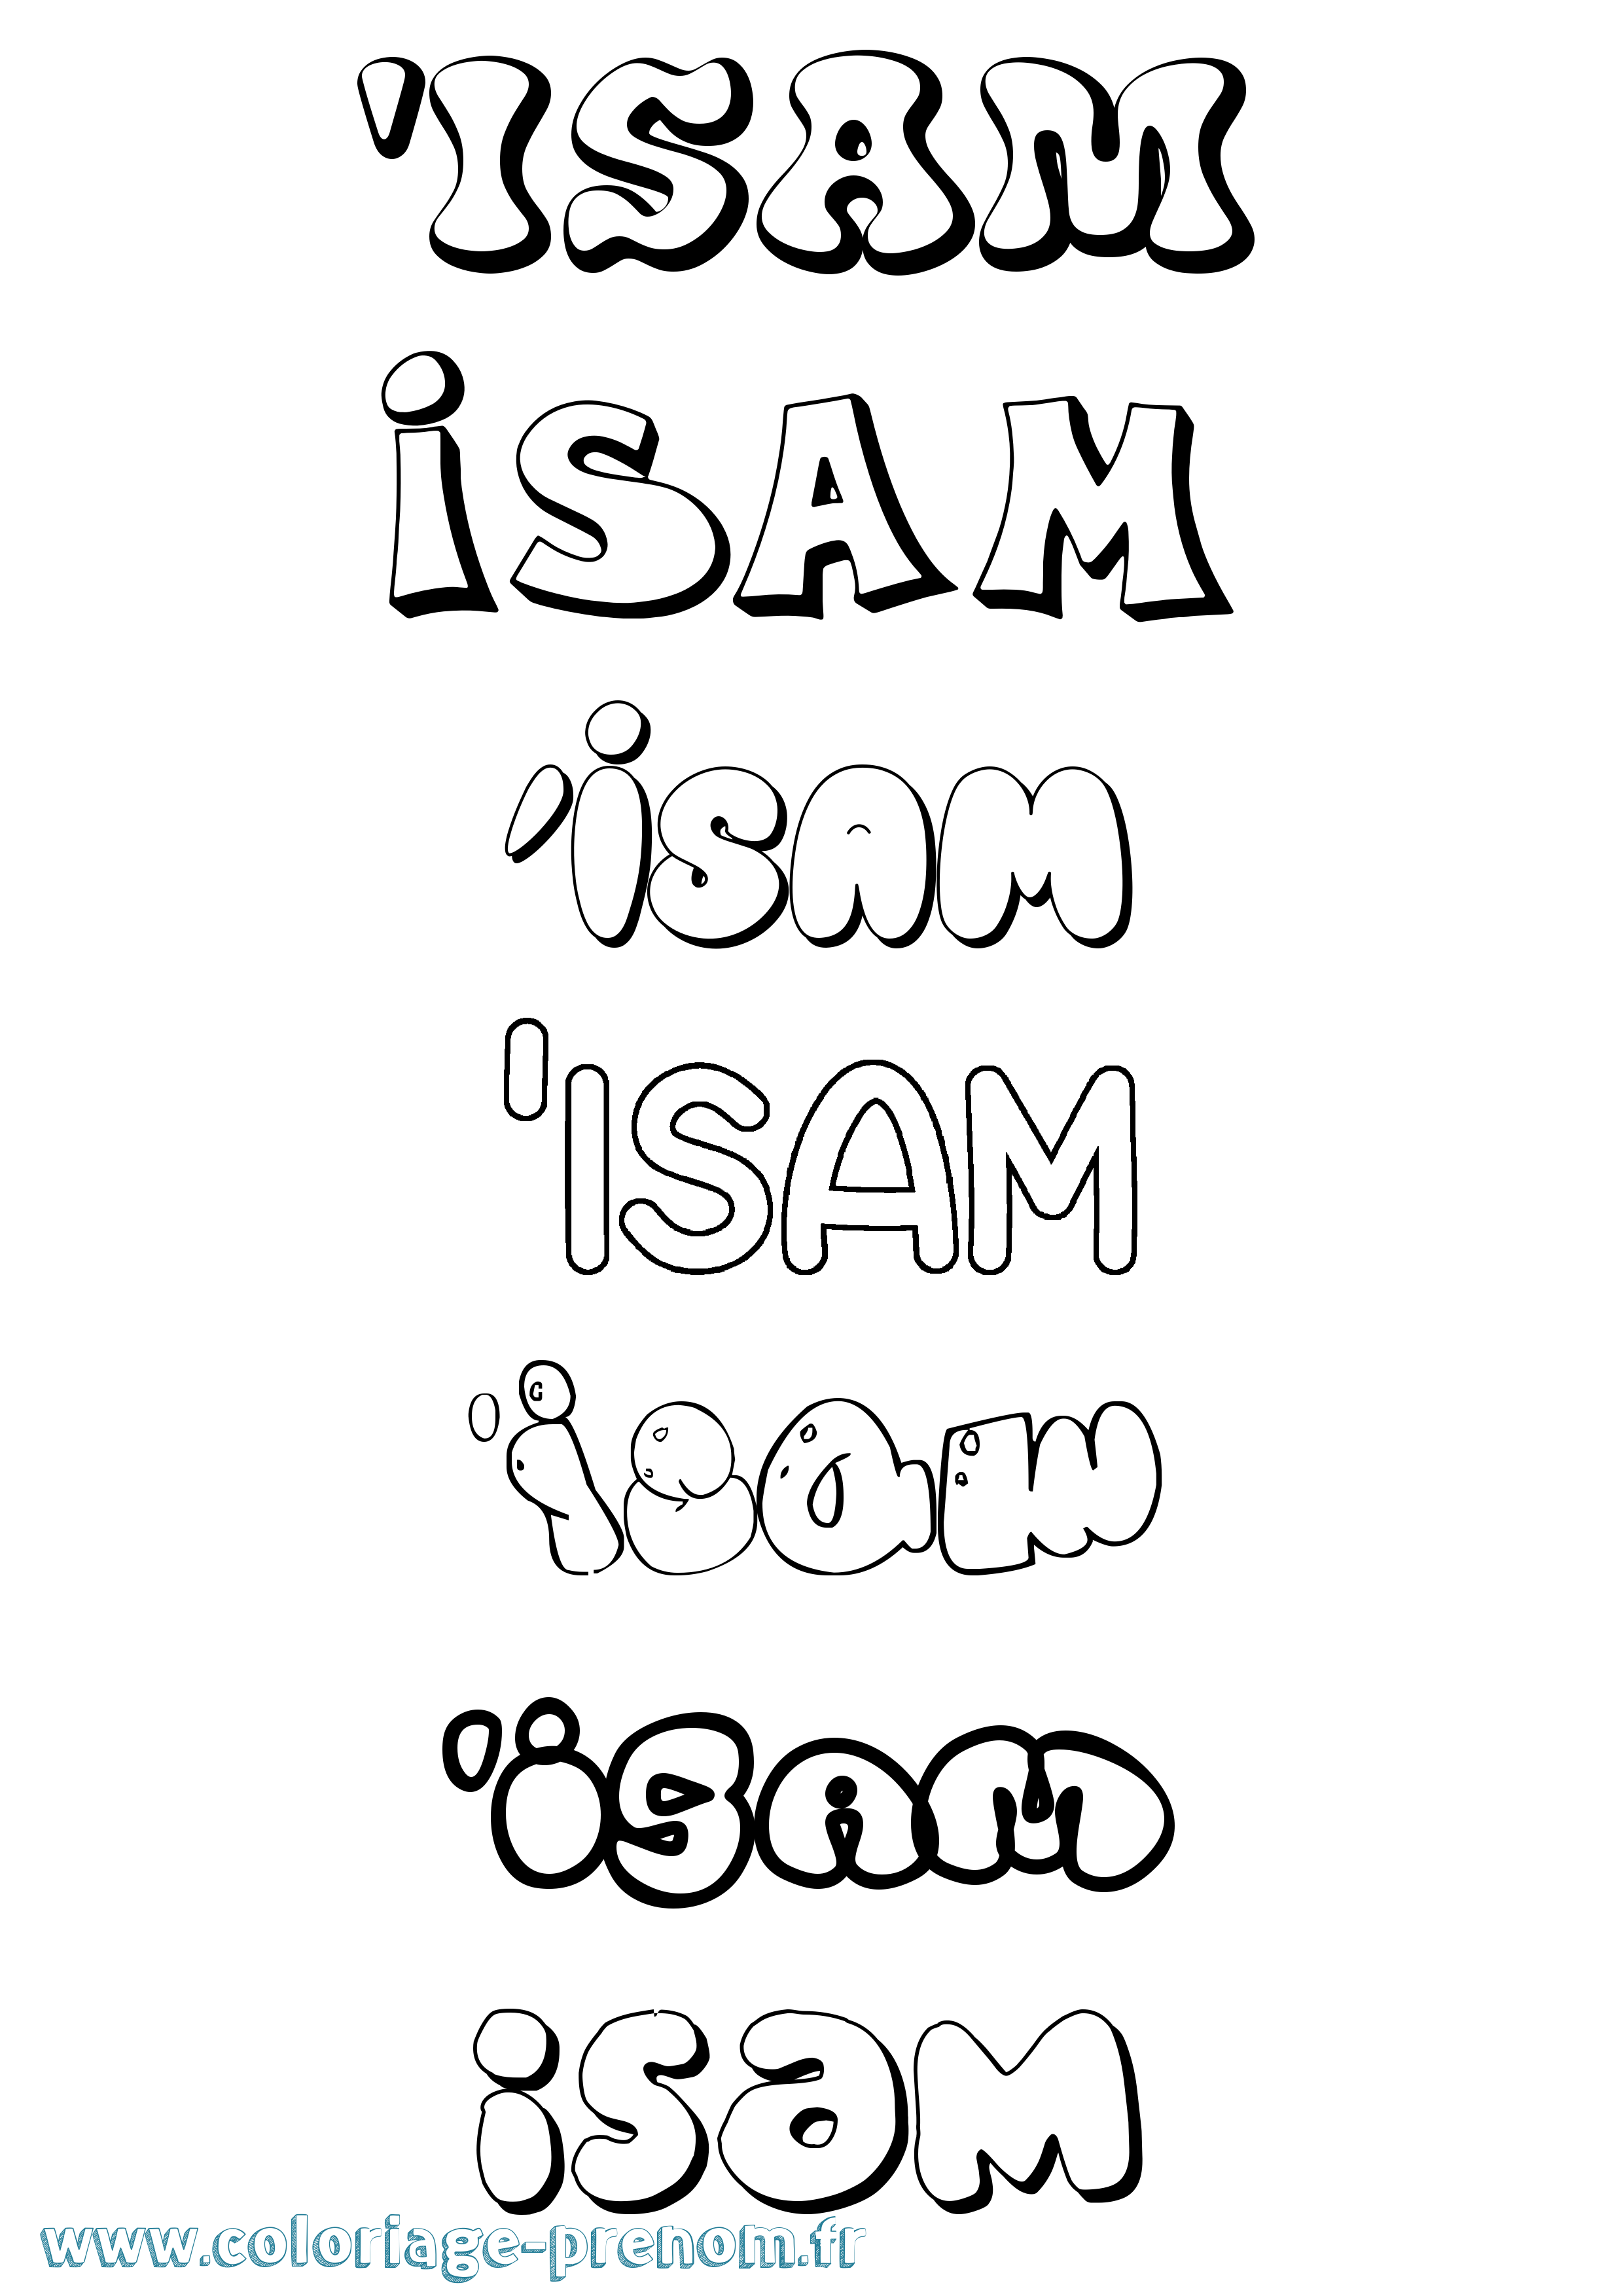 Coloriage prénom 'Isam Bubble